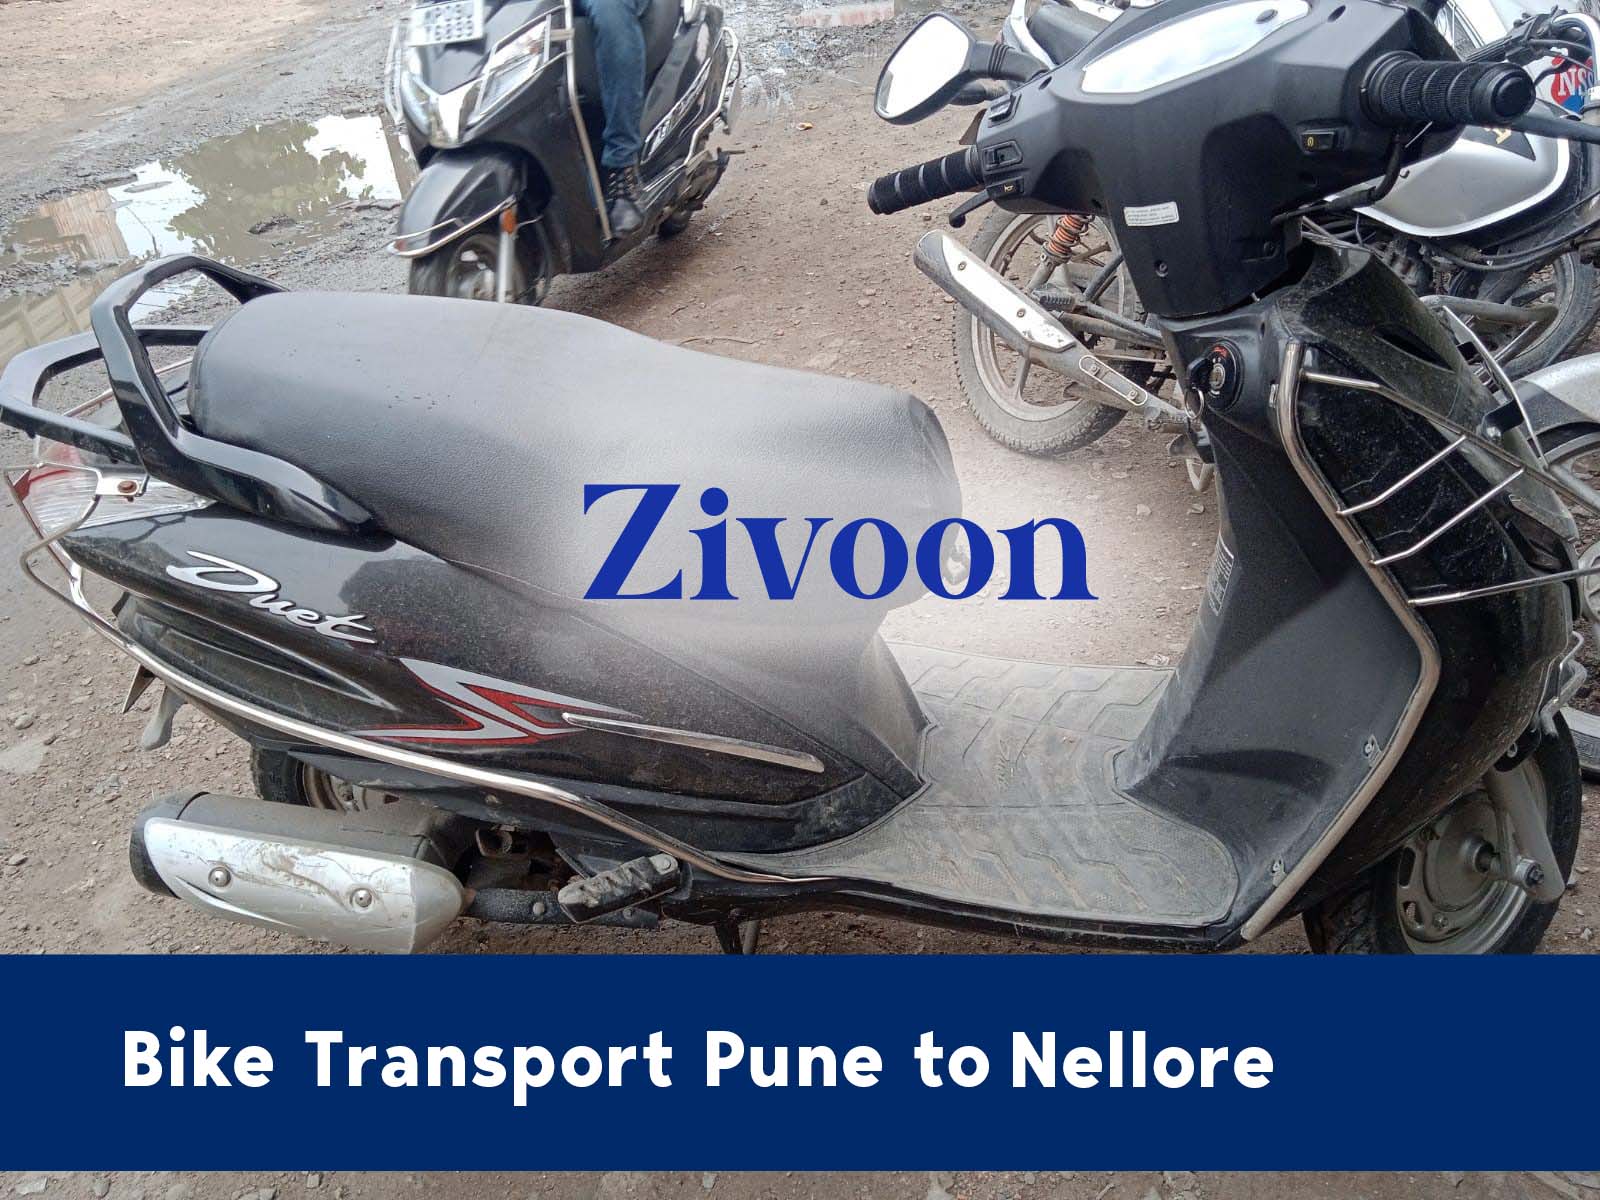 Bike Shifting Service Pune to Nellore